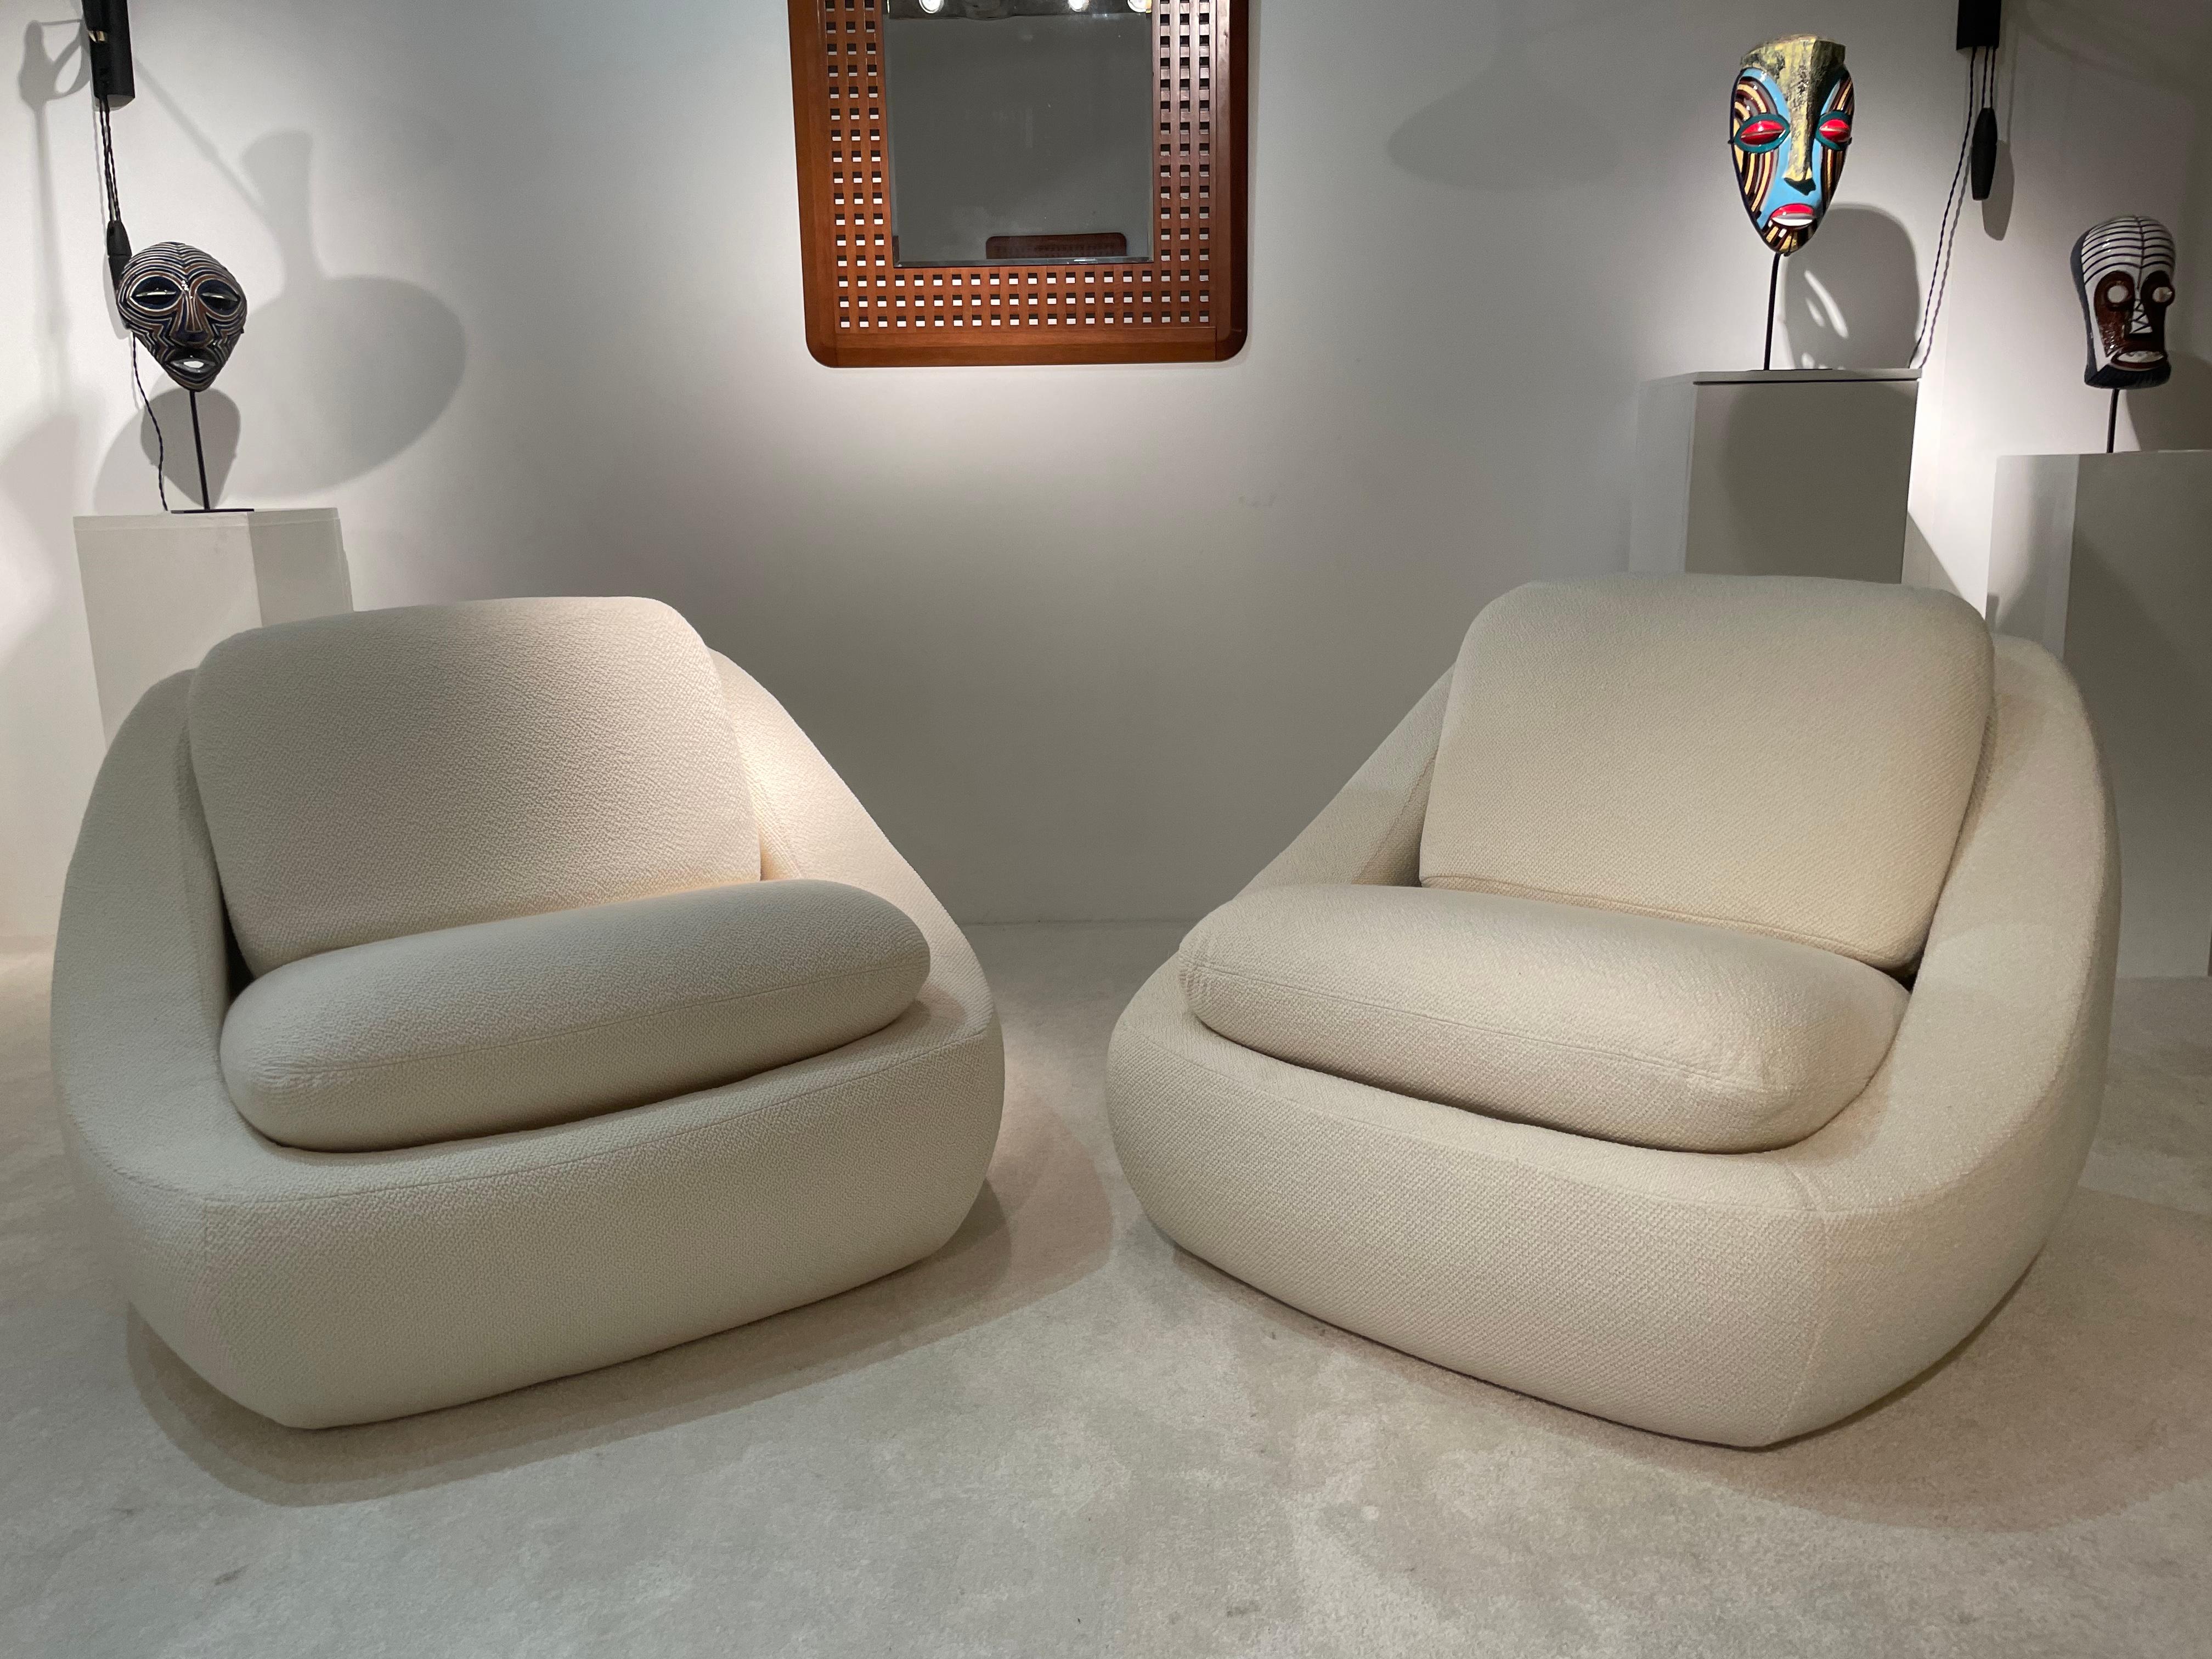 Pair of OSAKA armchairs by Boris Burov.